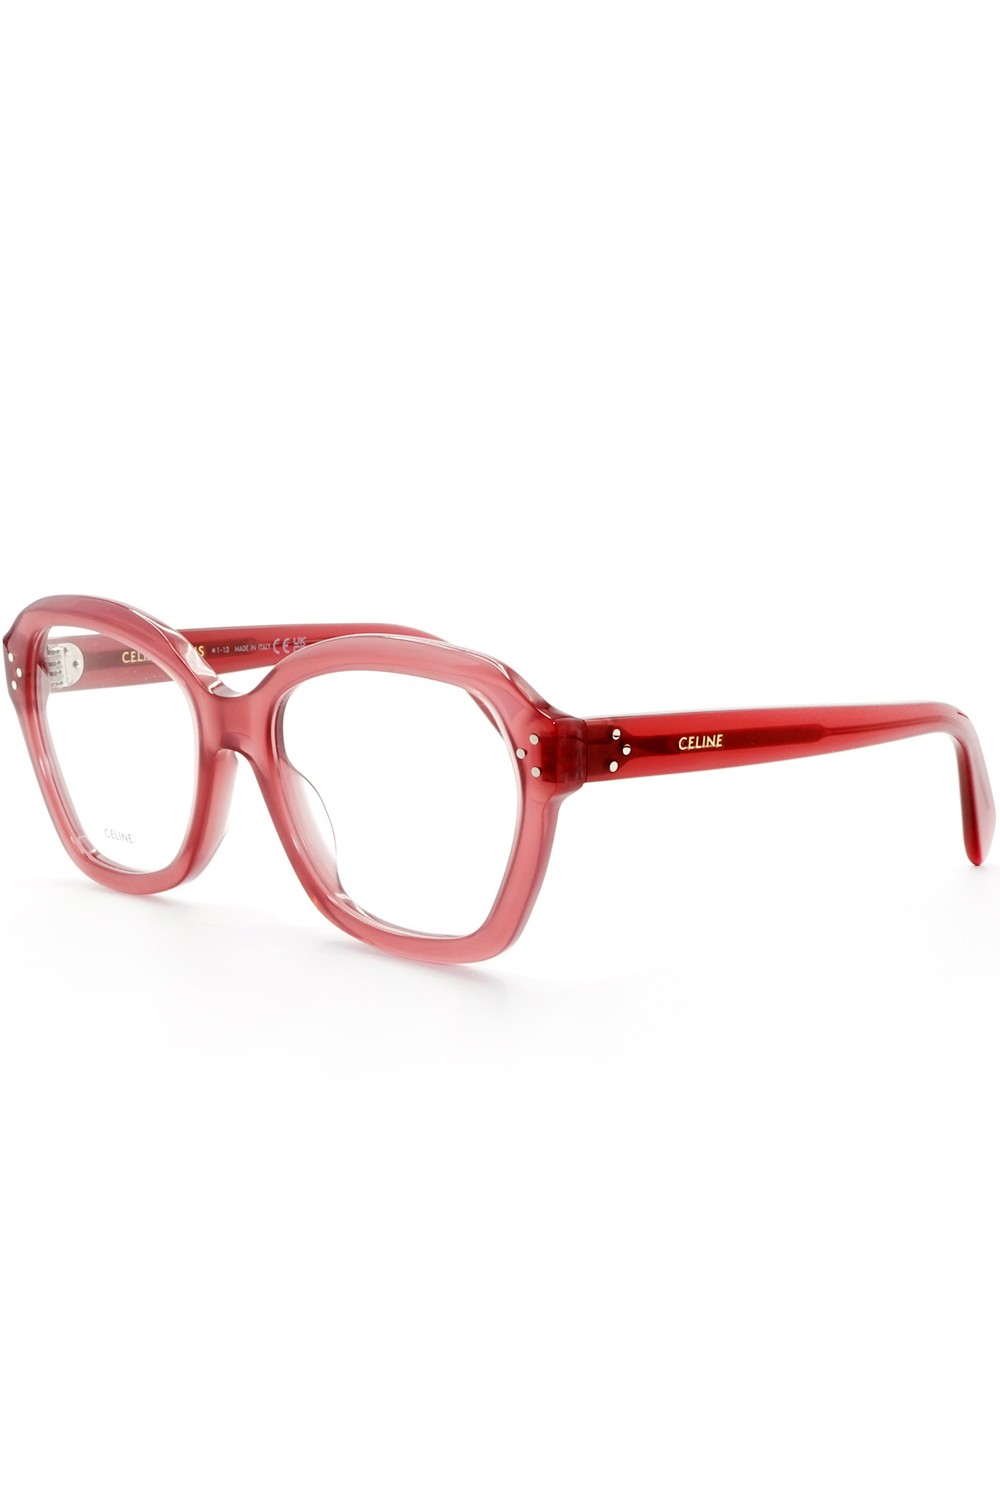 Celine - Occhiali da vista in celluloide squadrati per donna rosa - CL50100I 081